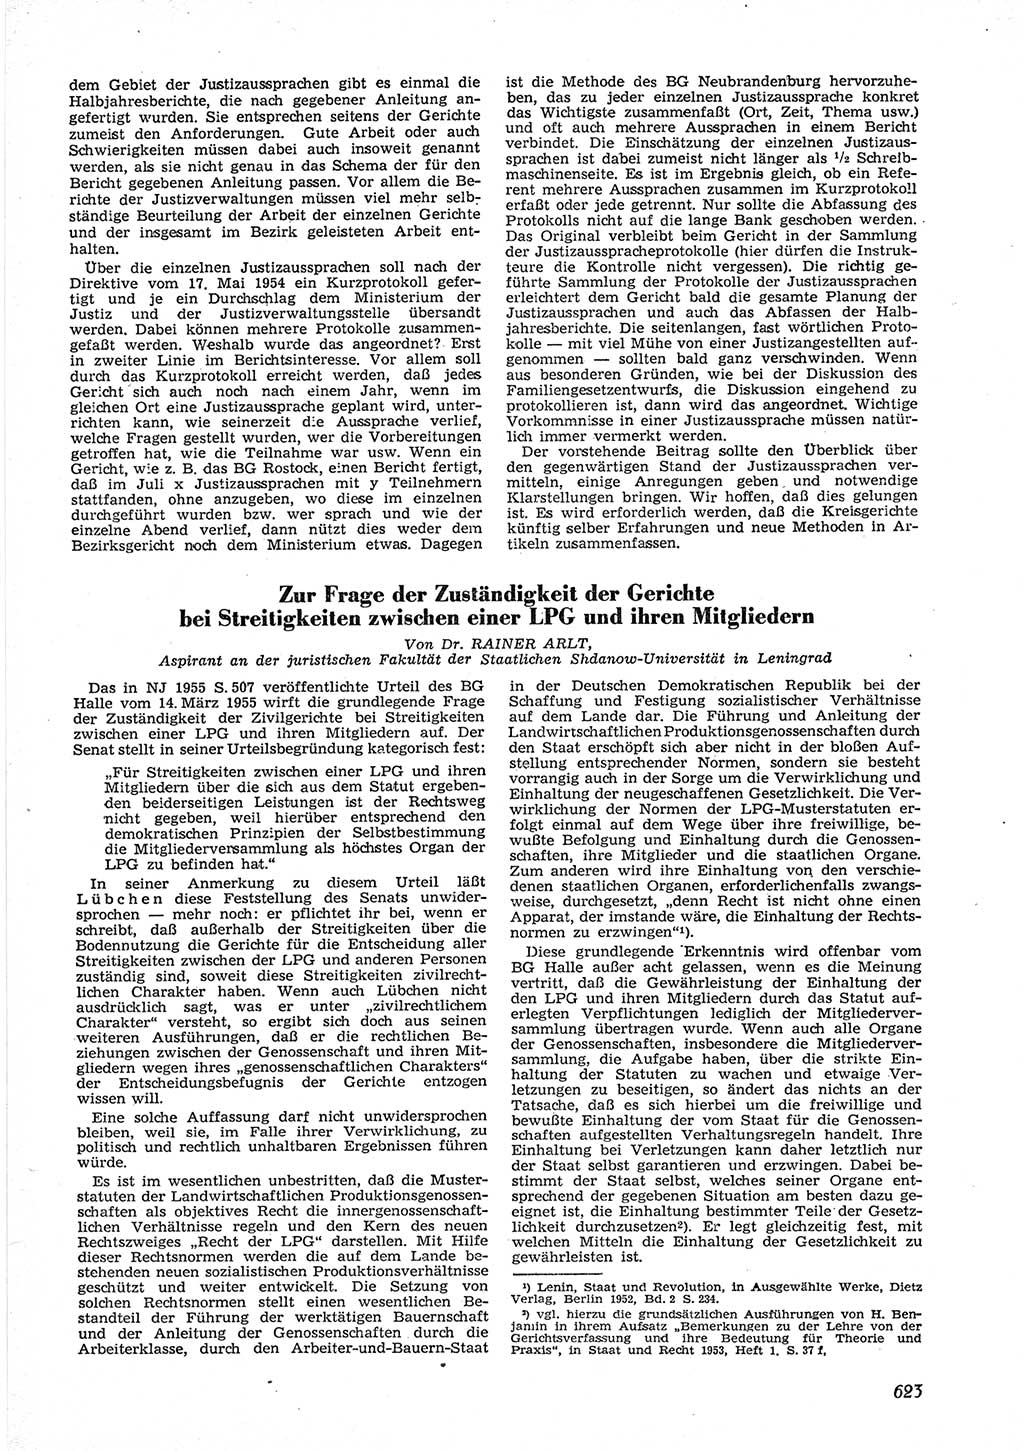 Neue Justiz (NJ), Zeitschrift für Recht und Rechtswissenschaft [Deutsche Demokratische Republik (DDR)], 9. Jahrgang 1955, Seite 623 (NJ DDR 1955, S. 623)